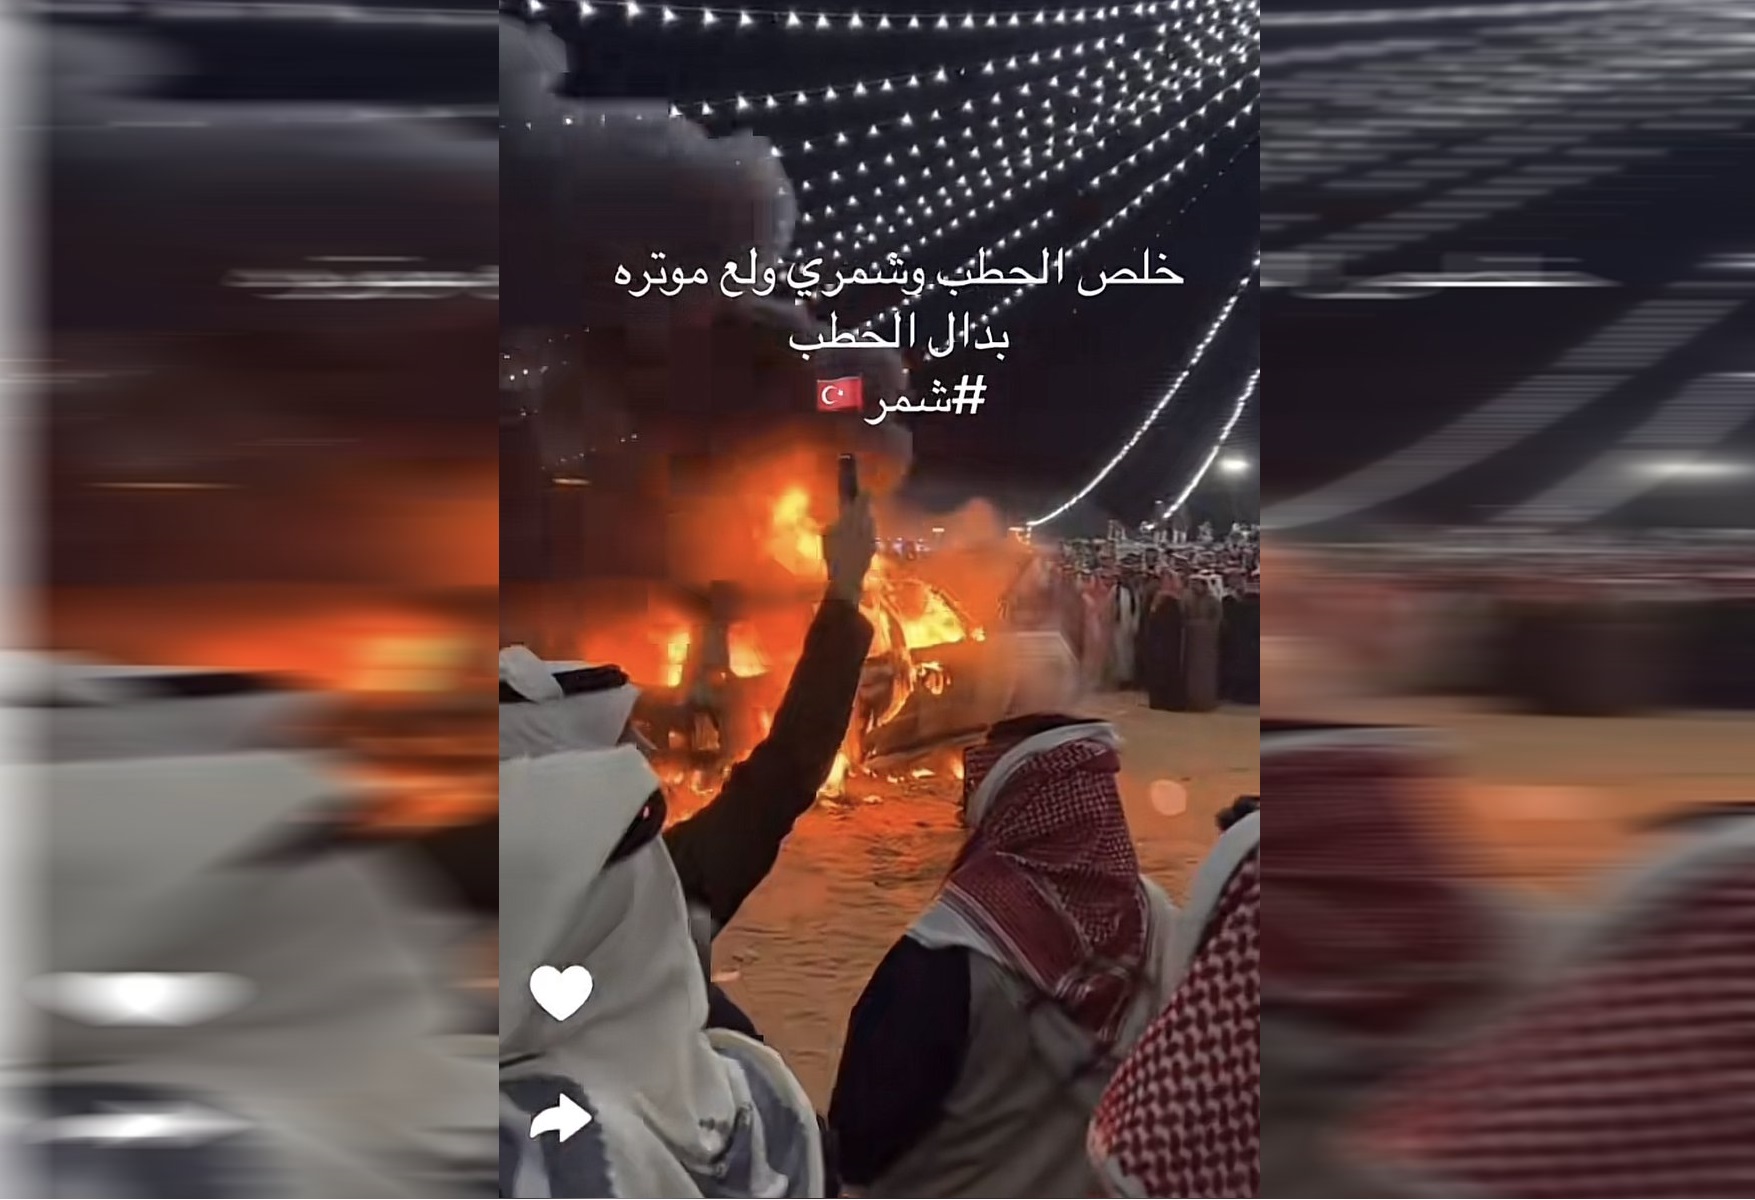 سعودي يحرق سيارته